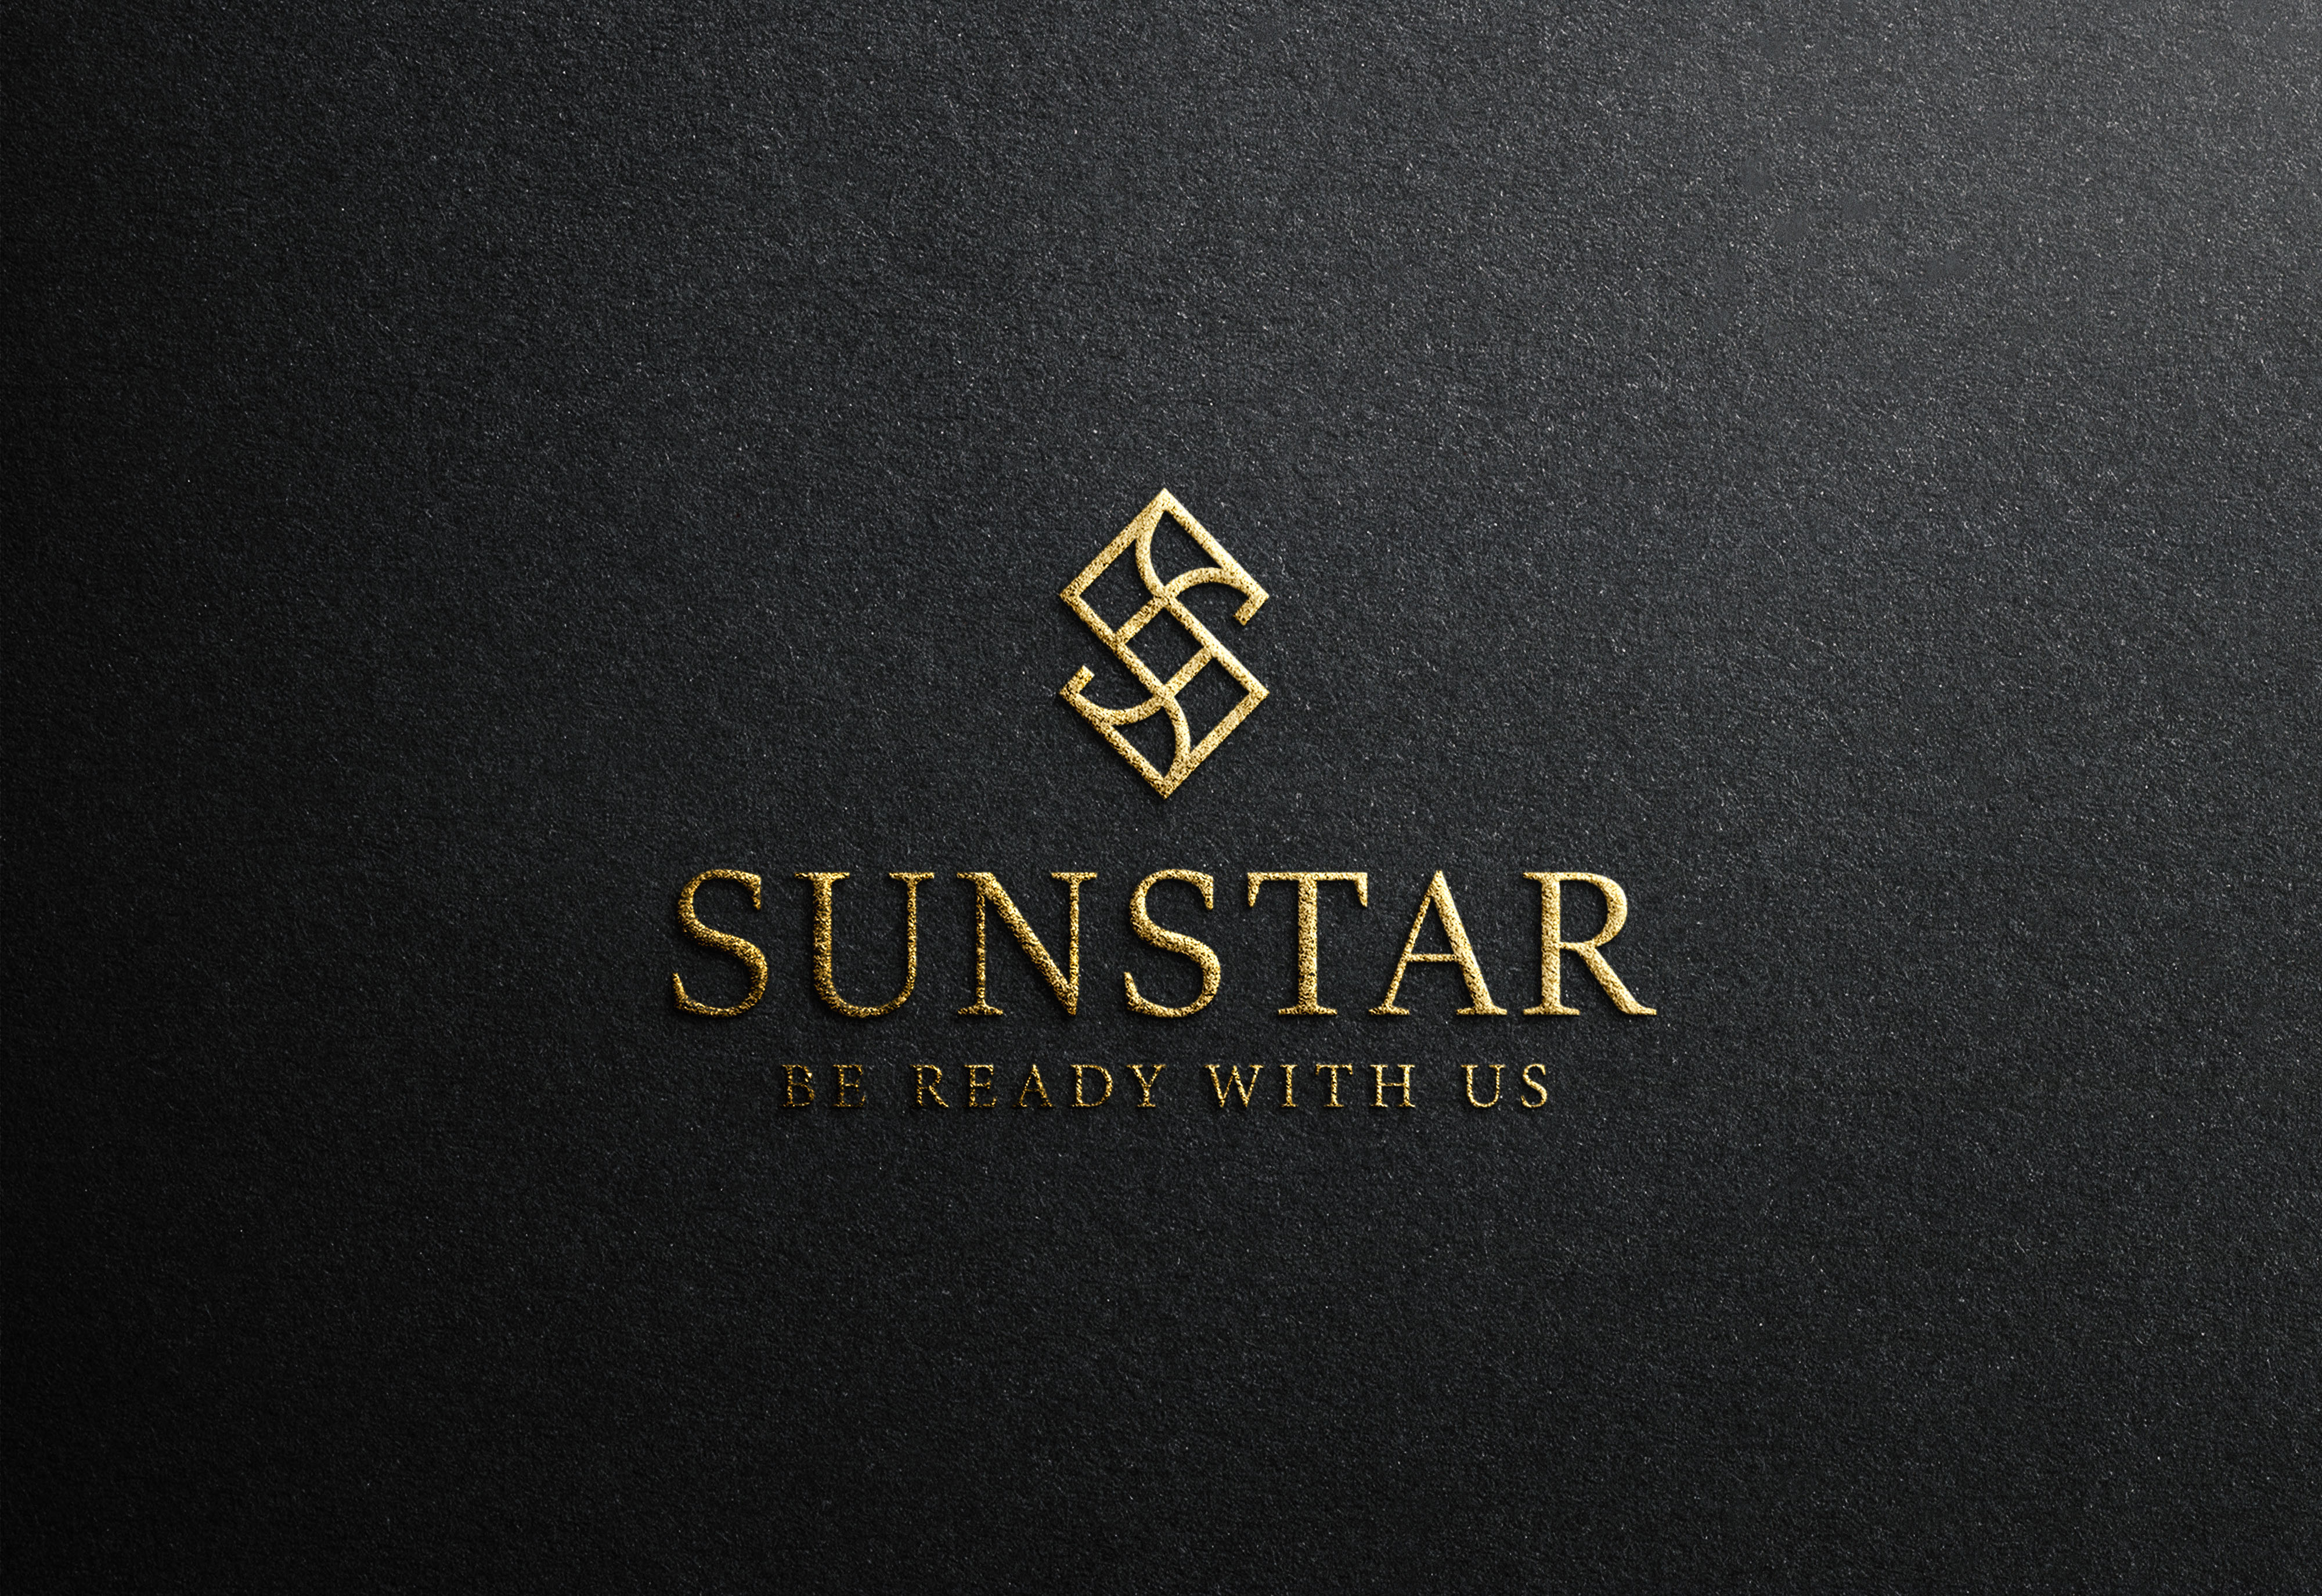 SunStar Agency